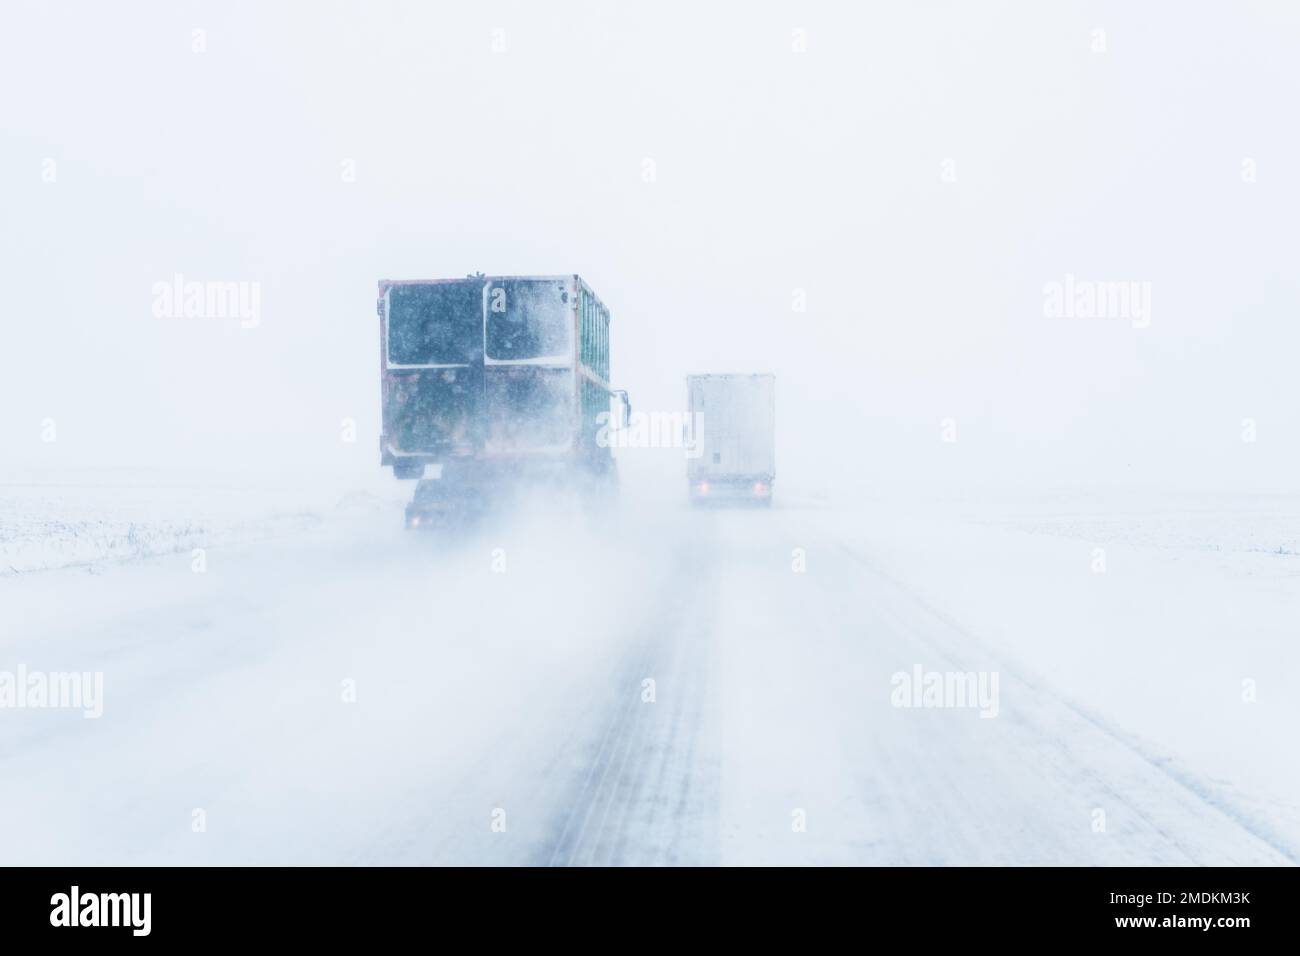 Gütertransport LKW auf der Straße im Schneesturm Schneesturm, schlechte Wetterbedingungen für Transport-Ereignis, selektive Fokus Stockfoto